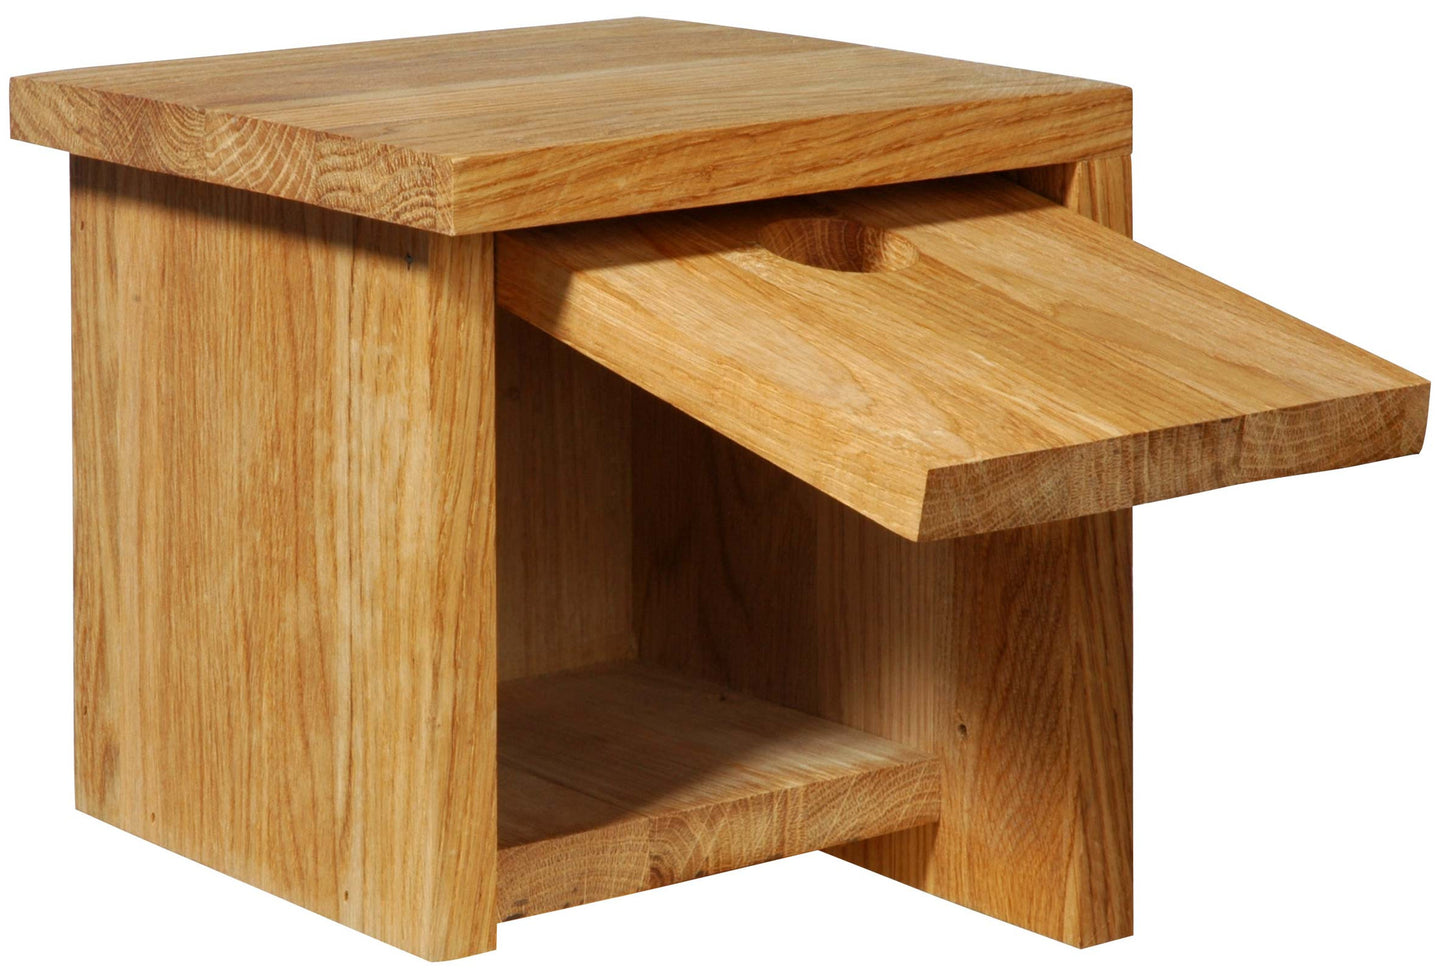 Quadratischer Eichenholz-Nistkasten, asymmetrisches Dach